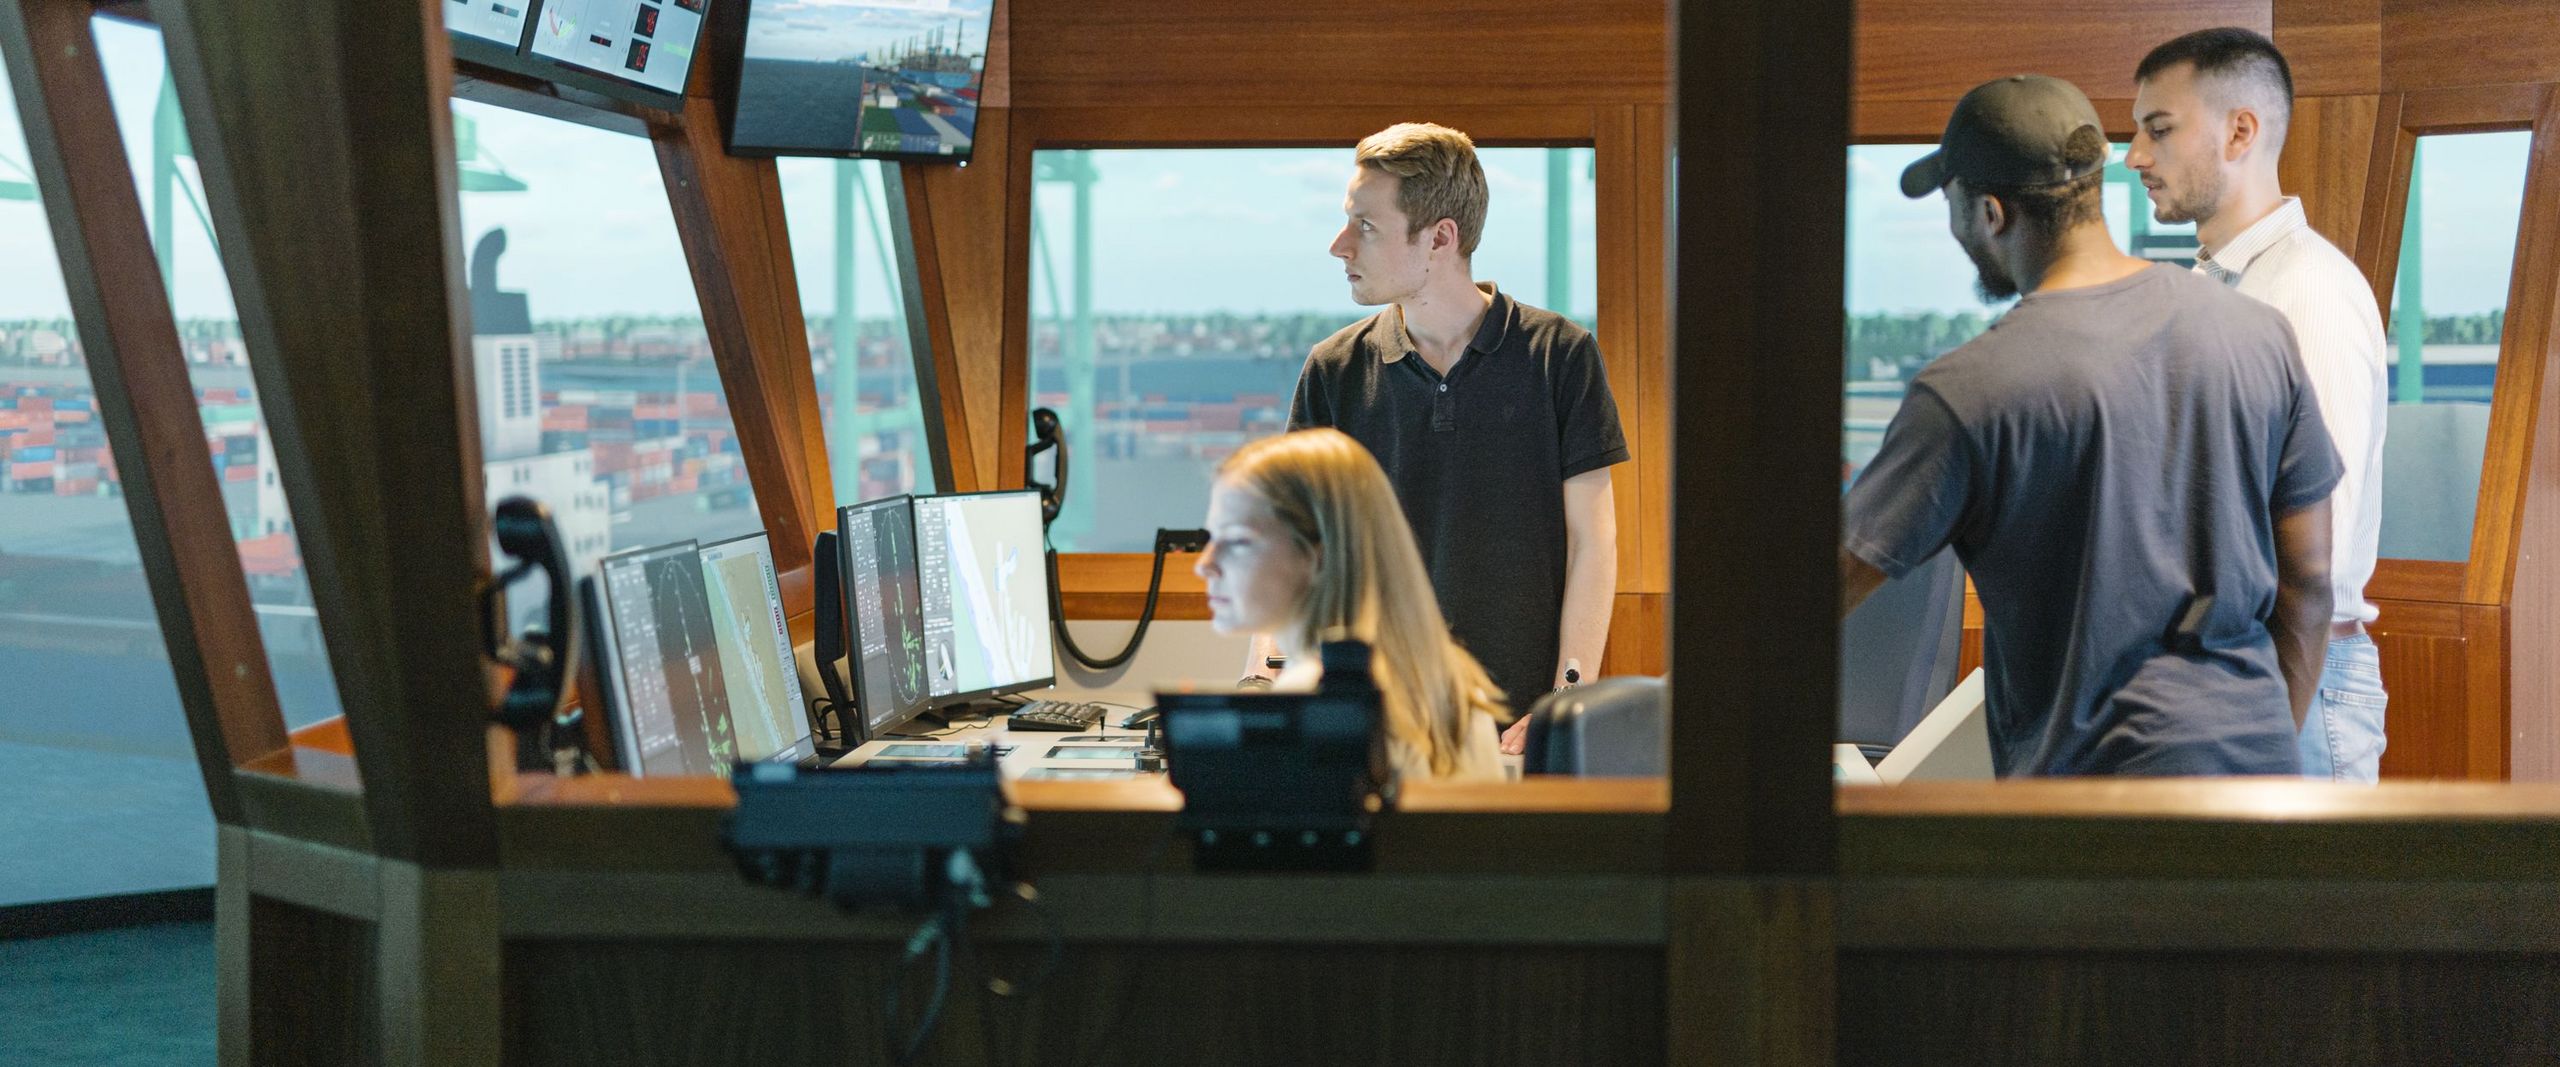 Junge Männer und eine Frau sitzen und arbeiten in einem Schiffssimulator.